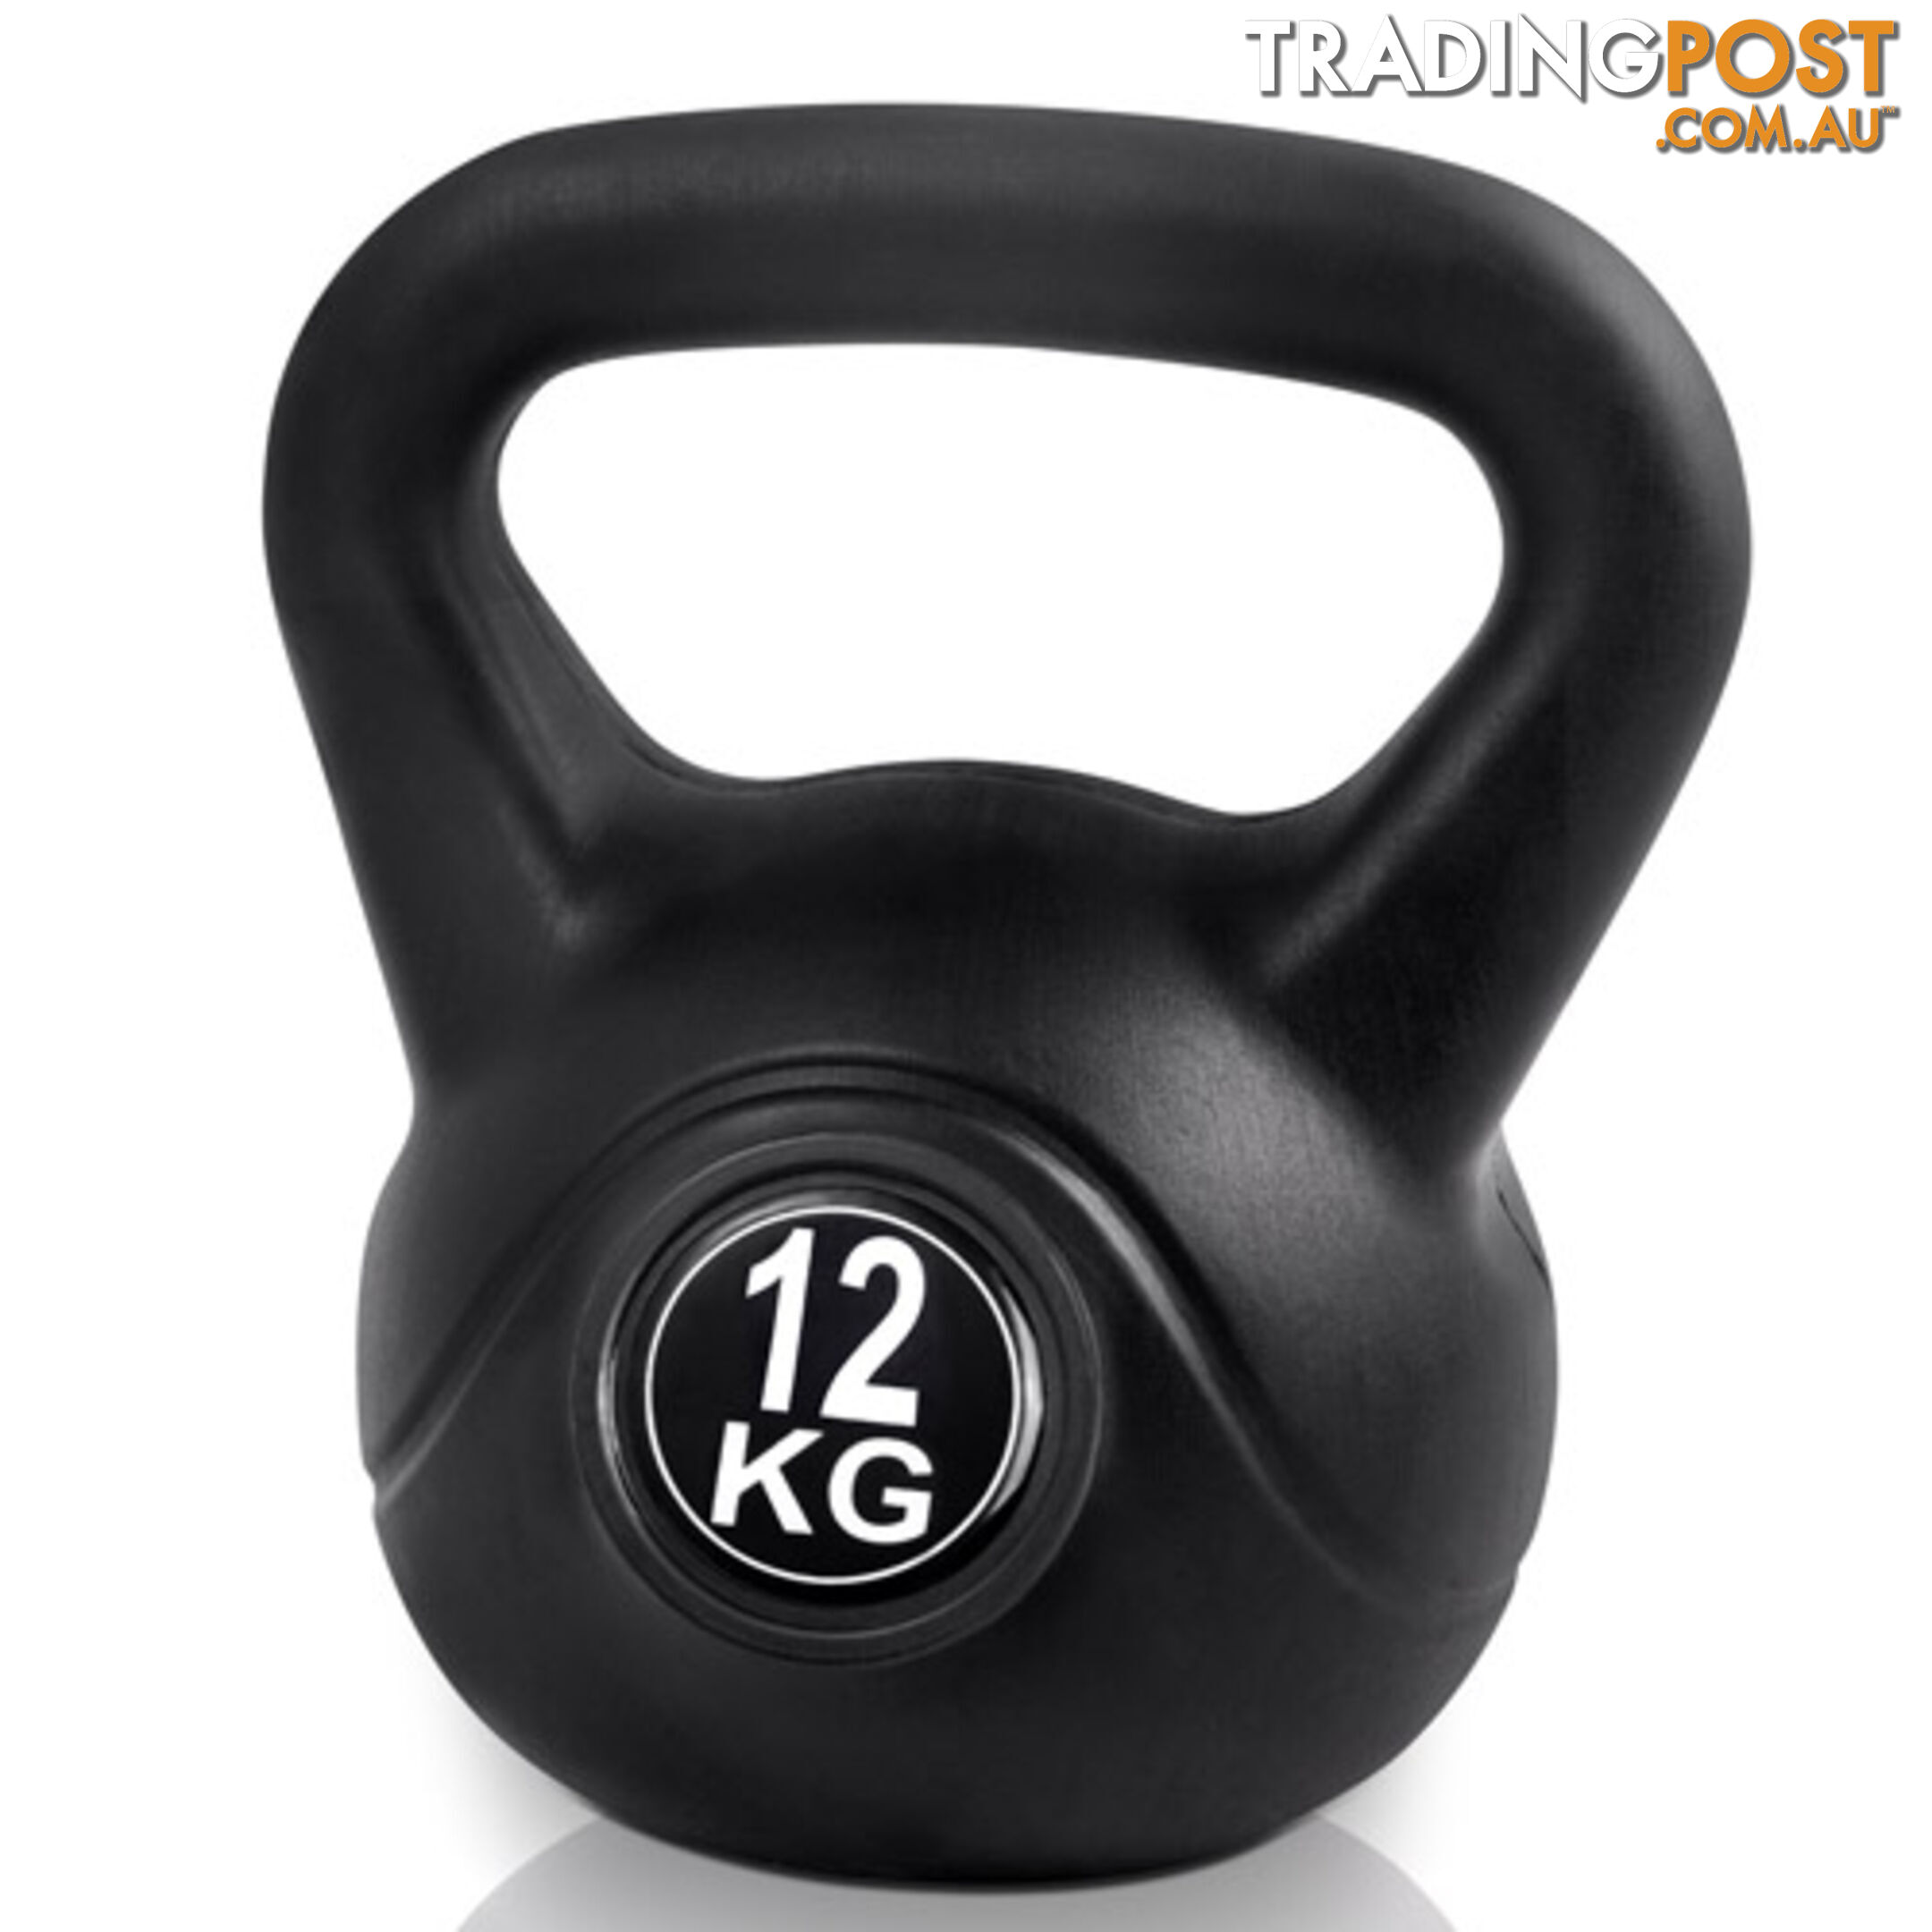 Kettlebells Fitness Exercise Kit 12kg